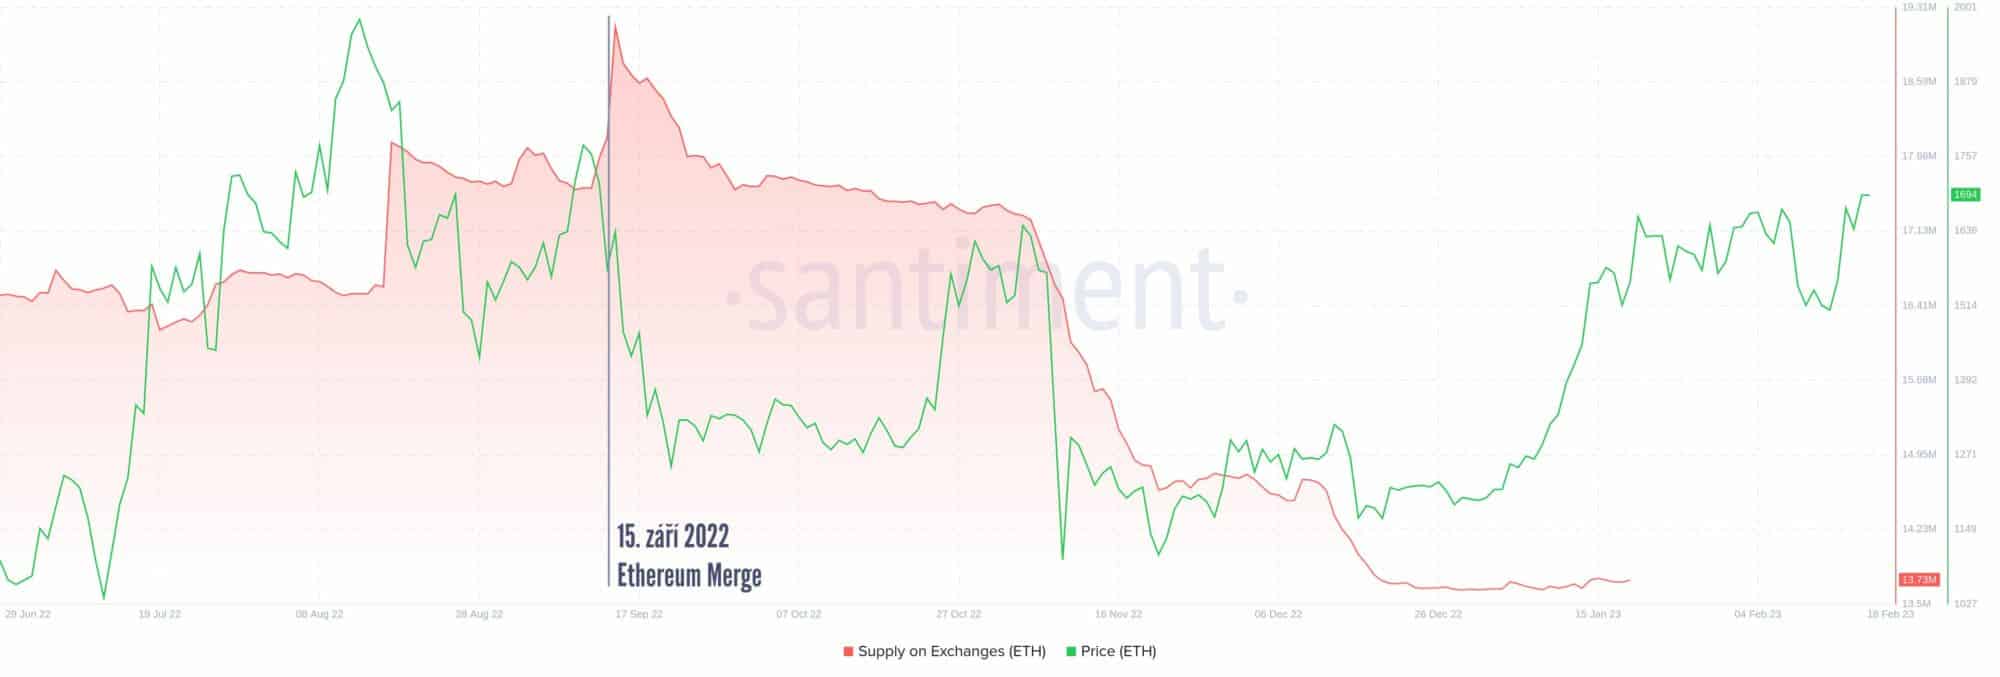 Tržní kapitalizace (červeně) po Merge začala klesat. Může za to staking? Cena Ethereum je vyznačena zeleně (zdroj: Santiment.com).